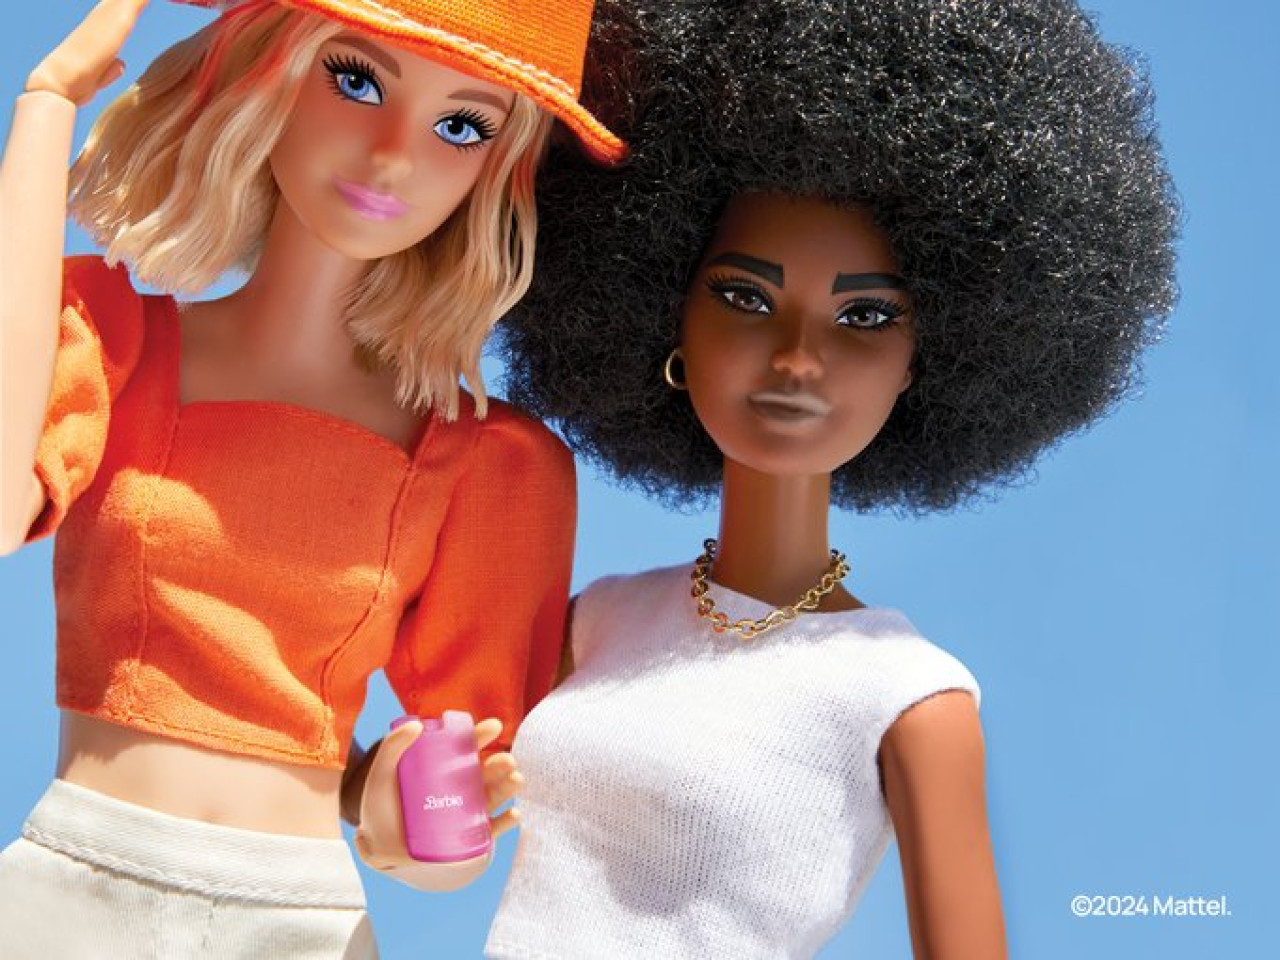 El lanzamiento del celular inspirado en Barbie será durante el verano. Foto: X/@HMDdevices.